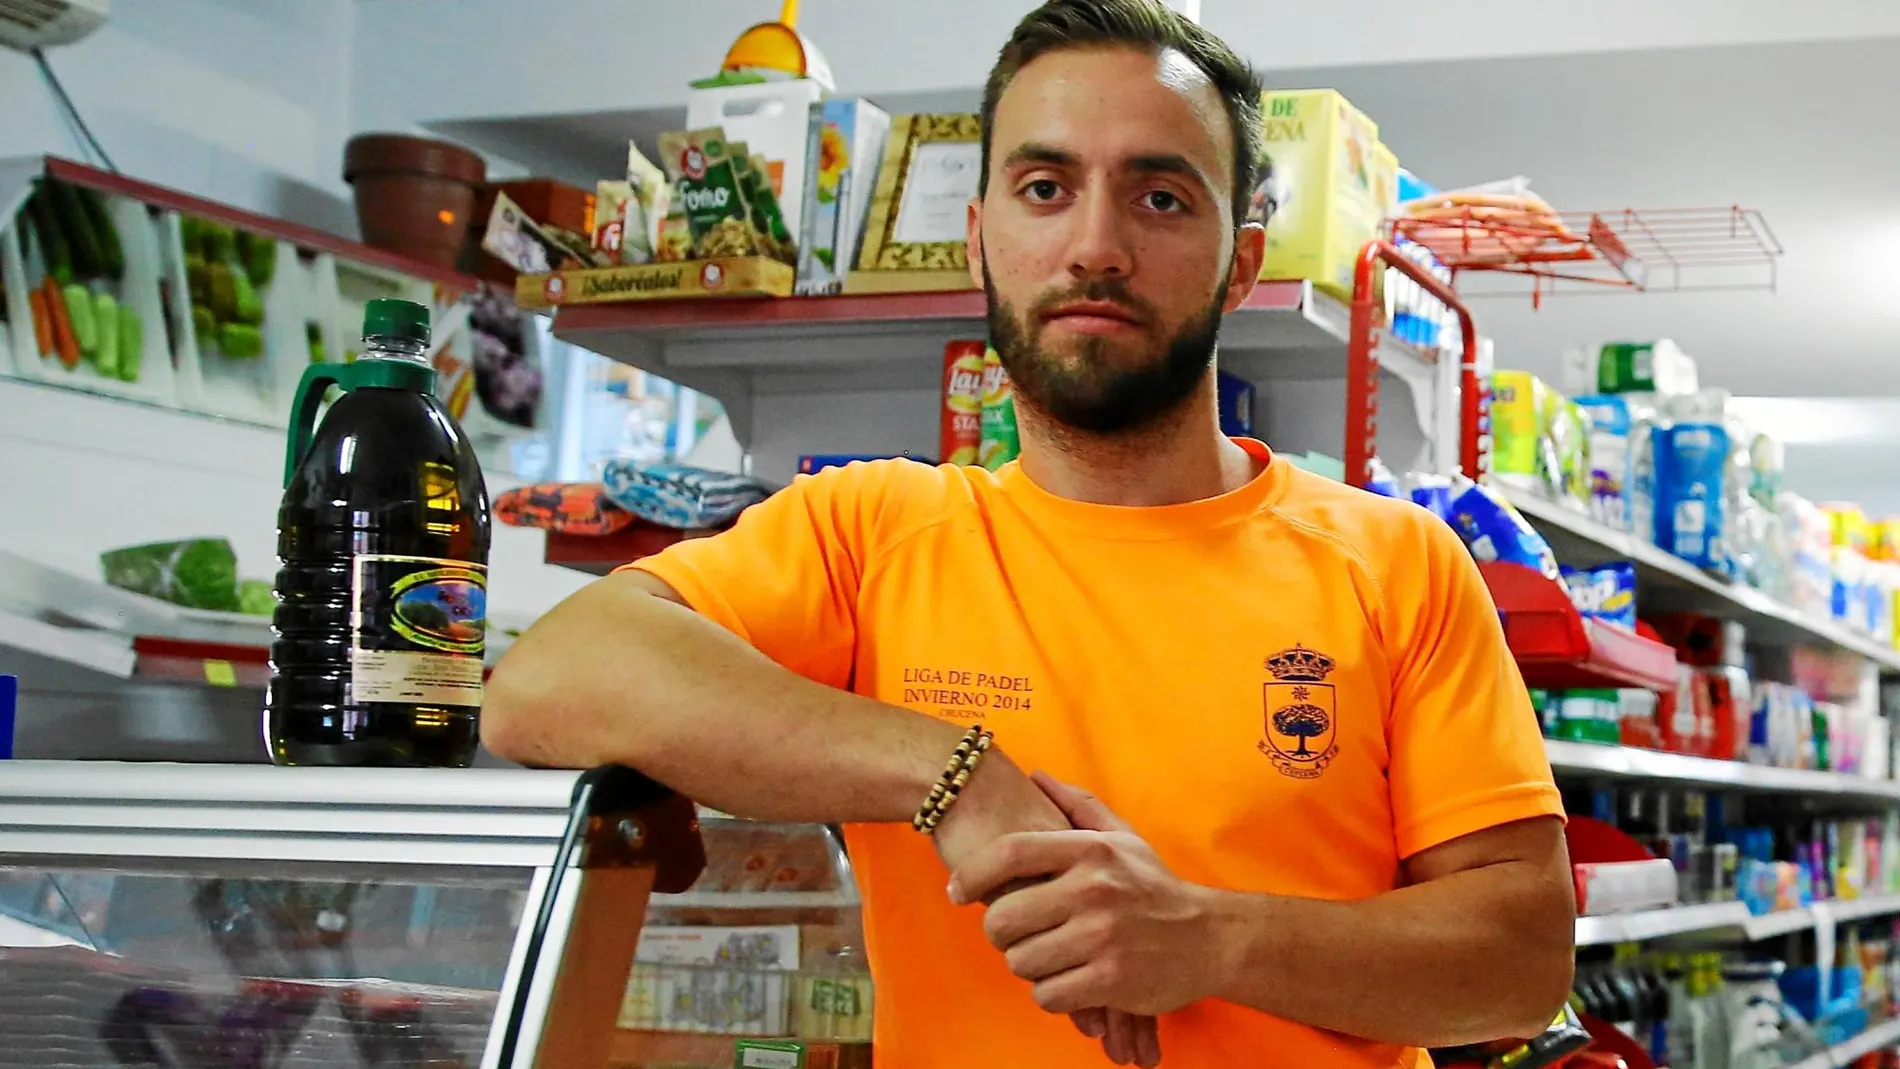 Manuel acaba de empezar en el negocio de alimentación donde más carne contaminada se dispensó / Foto: Cipriano Pastrano